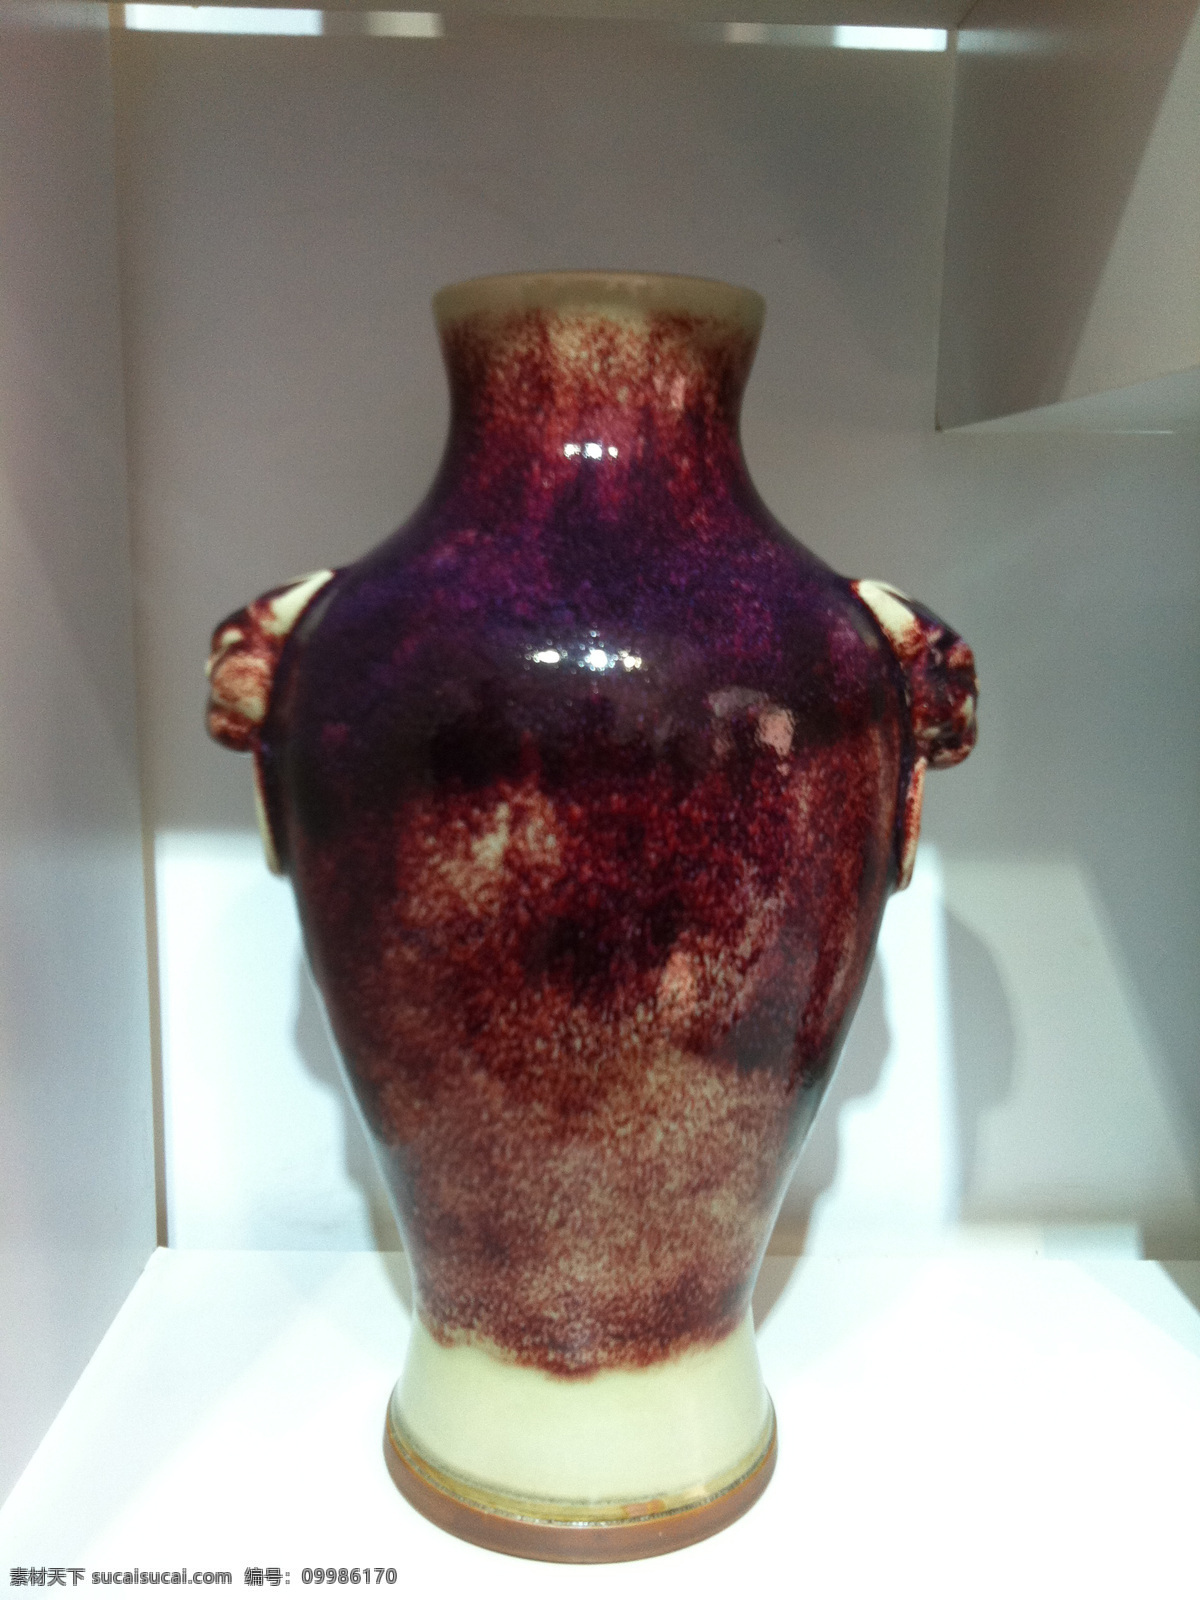 钧瓷花瓶 钧瓷 瓷器 陶瓷 瓷瓶 瓷器宣传画 瓷器图片 文化艺术 器物 传统文化